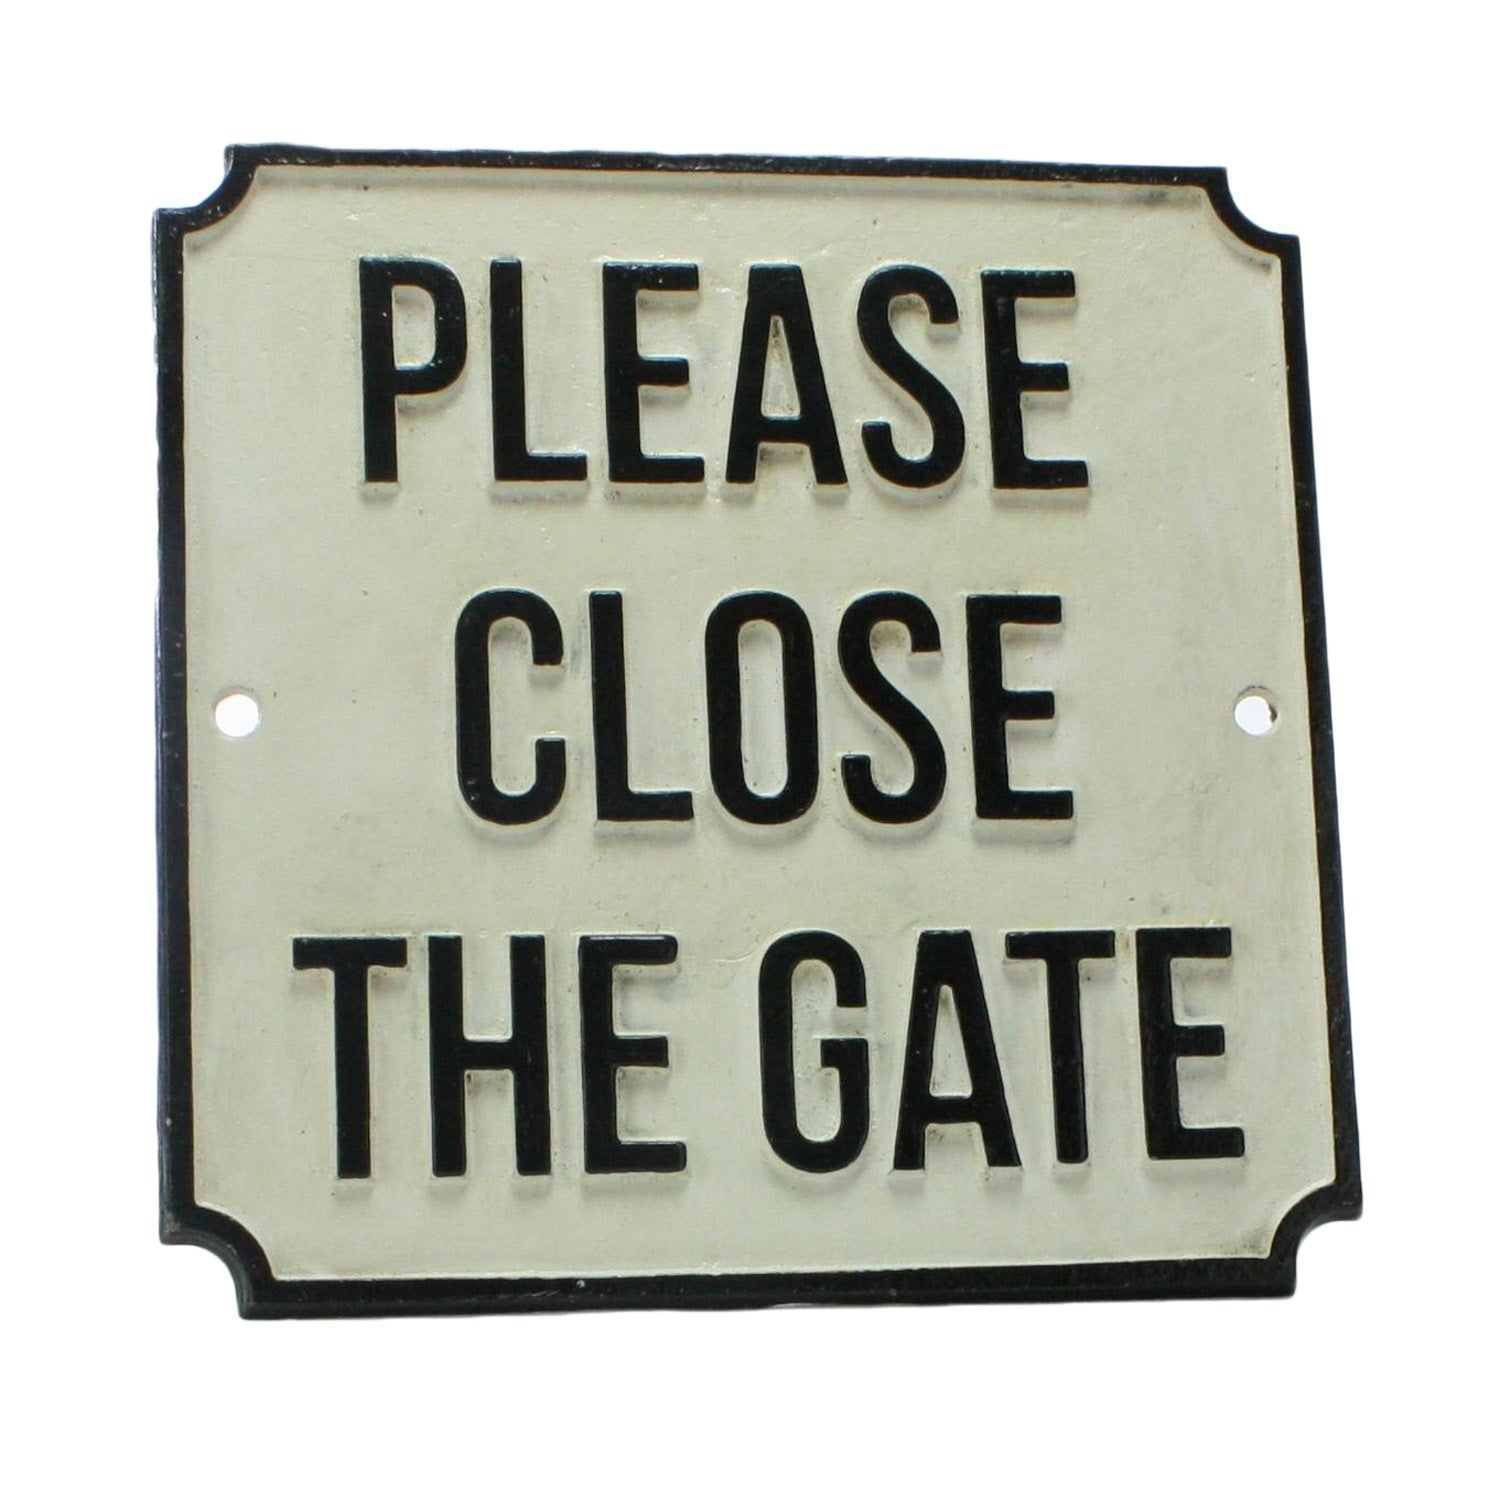 Please Close The Gate